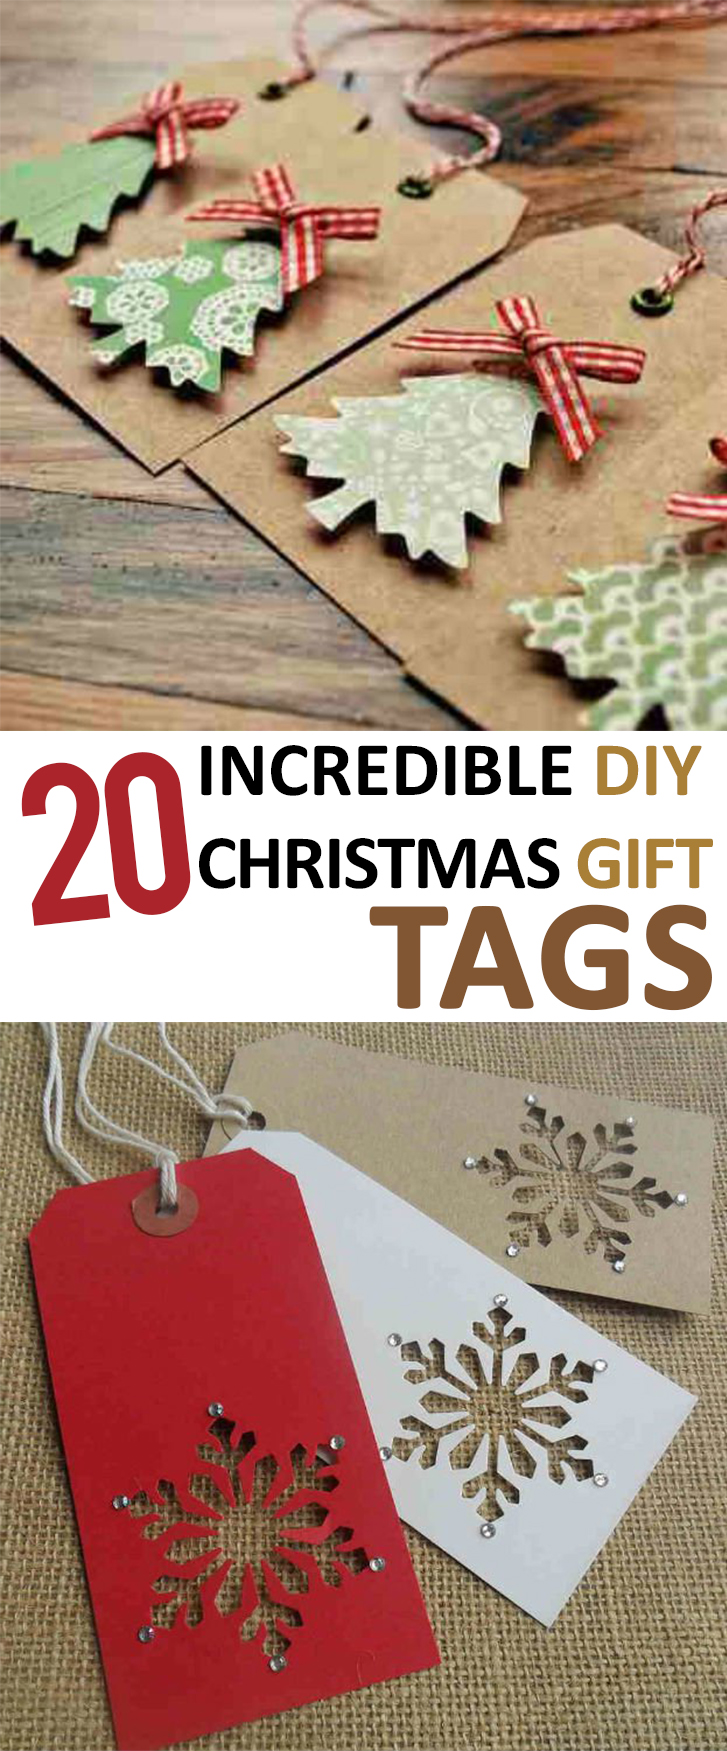 20 Incredible DIY Christmas Gift Tags